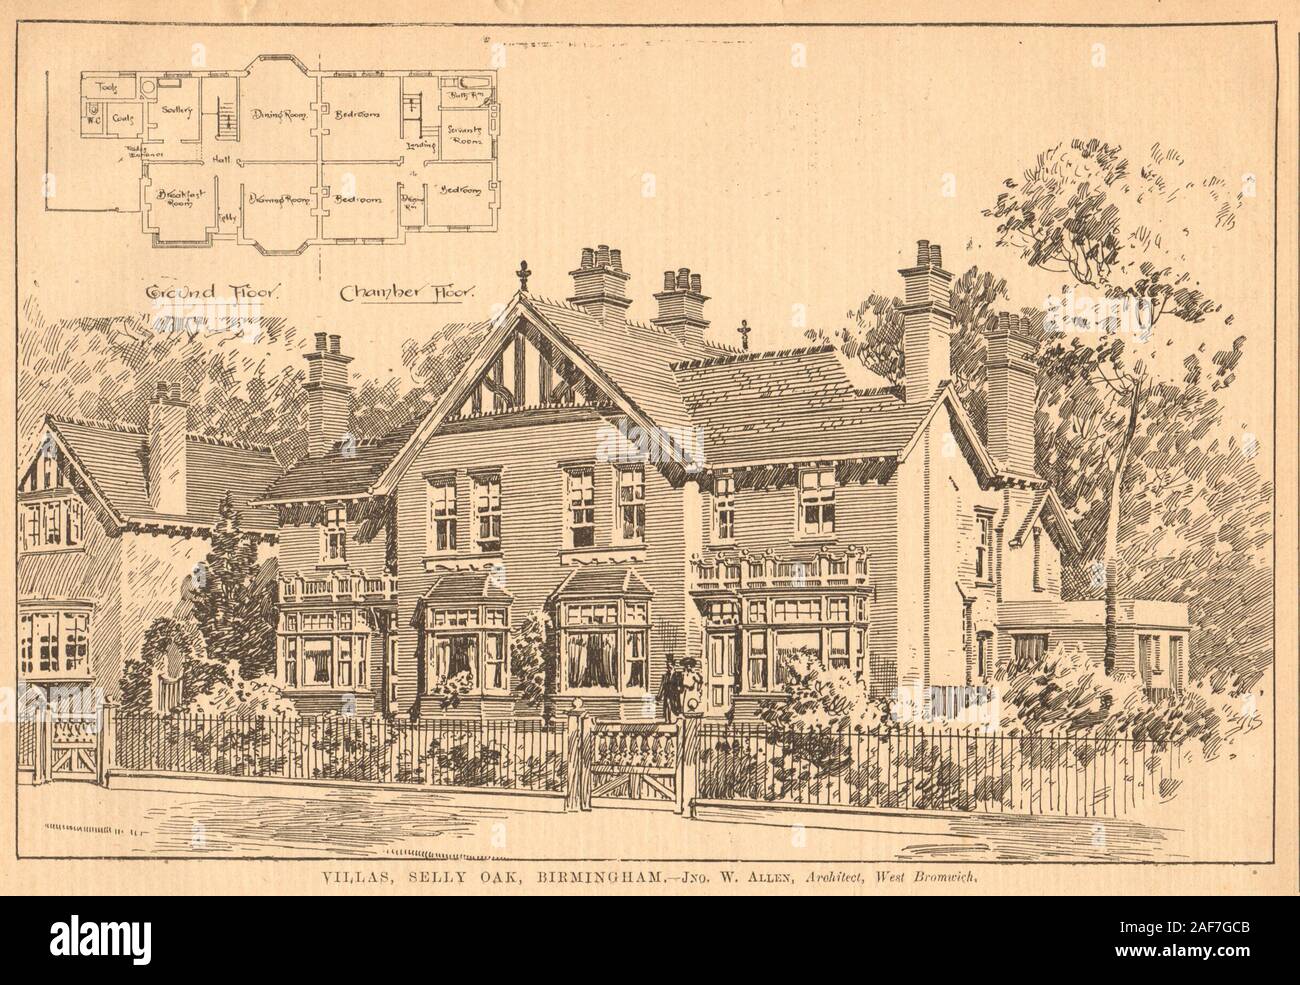 Ville, Selly Oak, Birmingham - Jno. W. ALLEN, architetto, West Bromwich 1903 Foto Stock